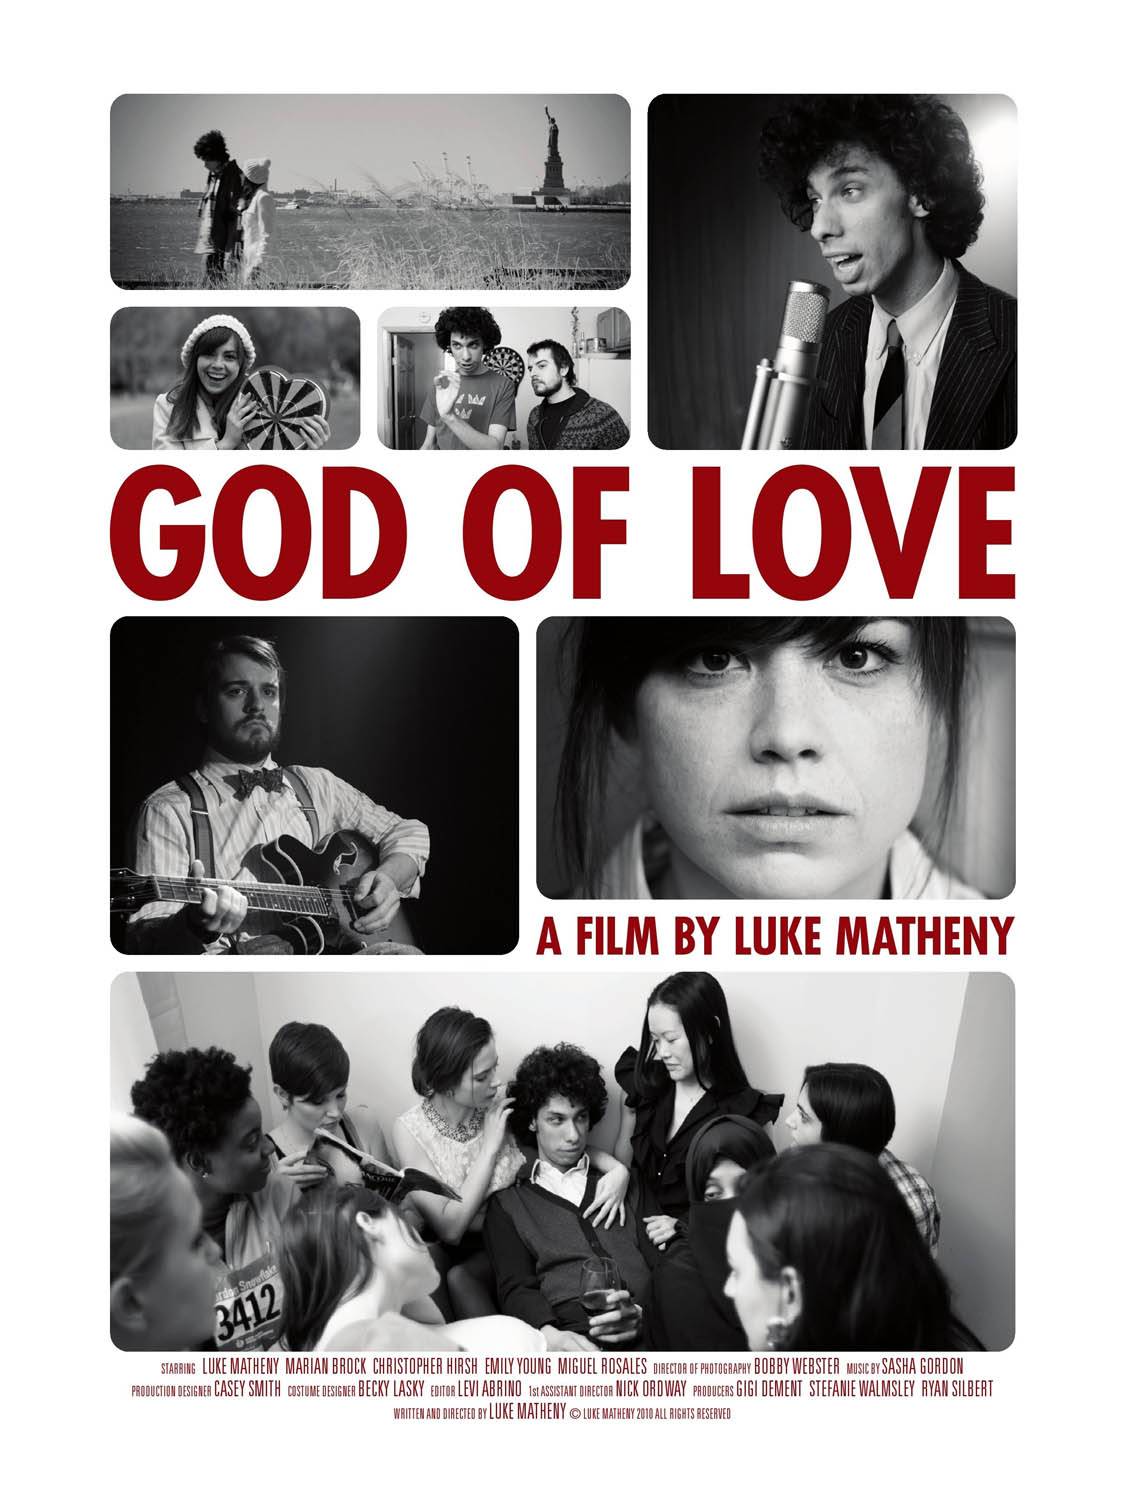 Бог любви / God of Love (2010) отзывы. Рецензии. Новости кино. Актеры фильма Бог любви. Отзывы о фильме Бог любви